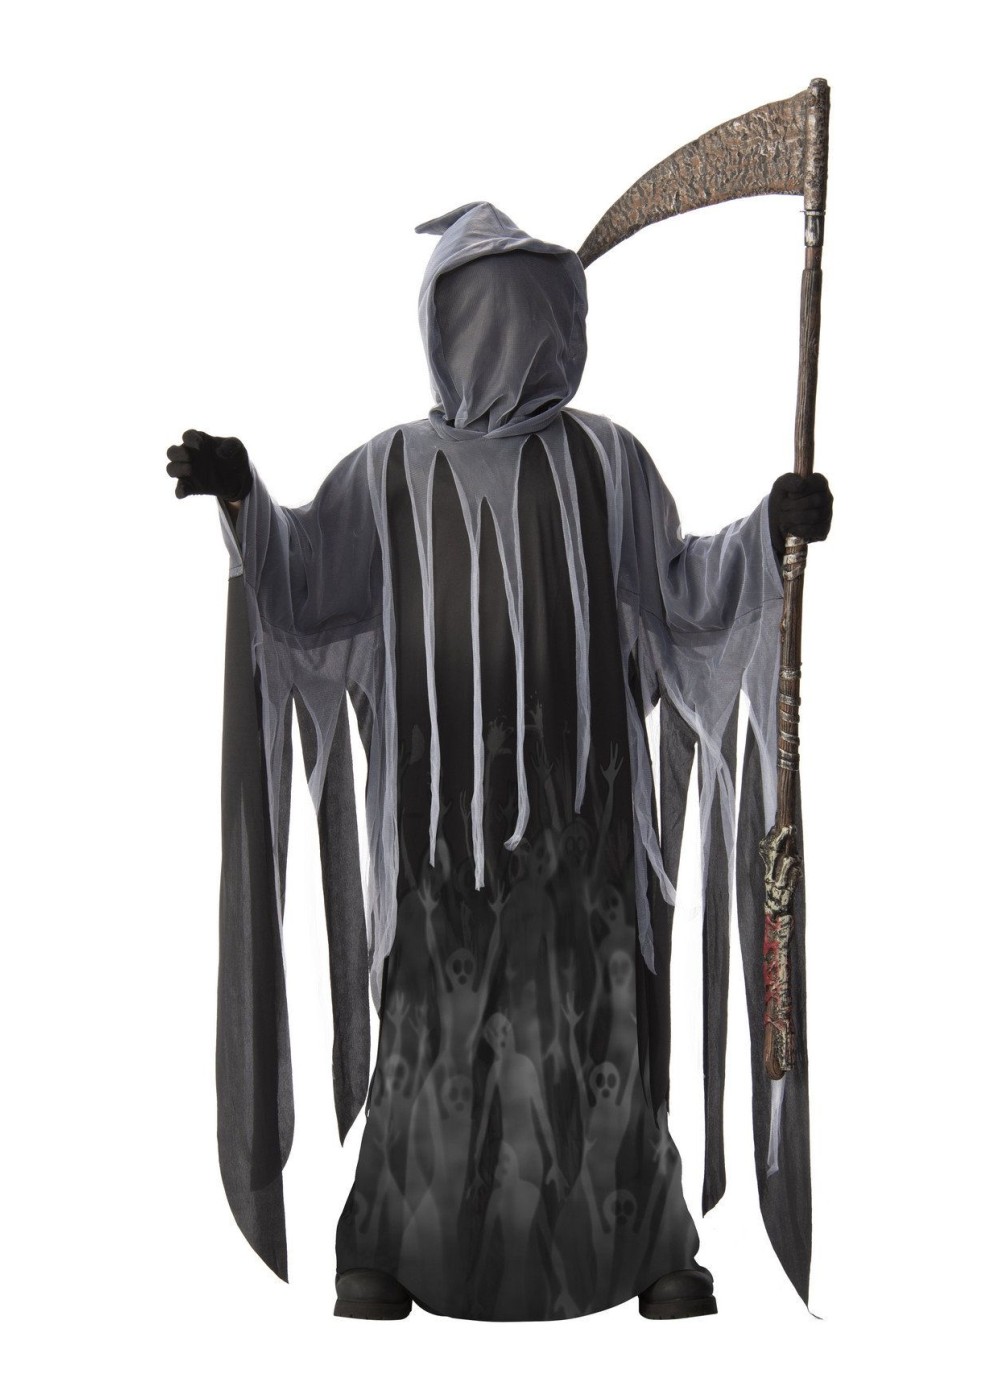 grim reaper costume